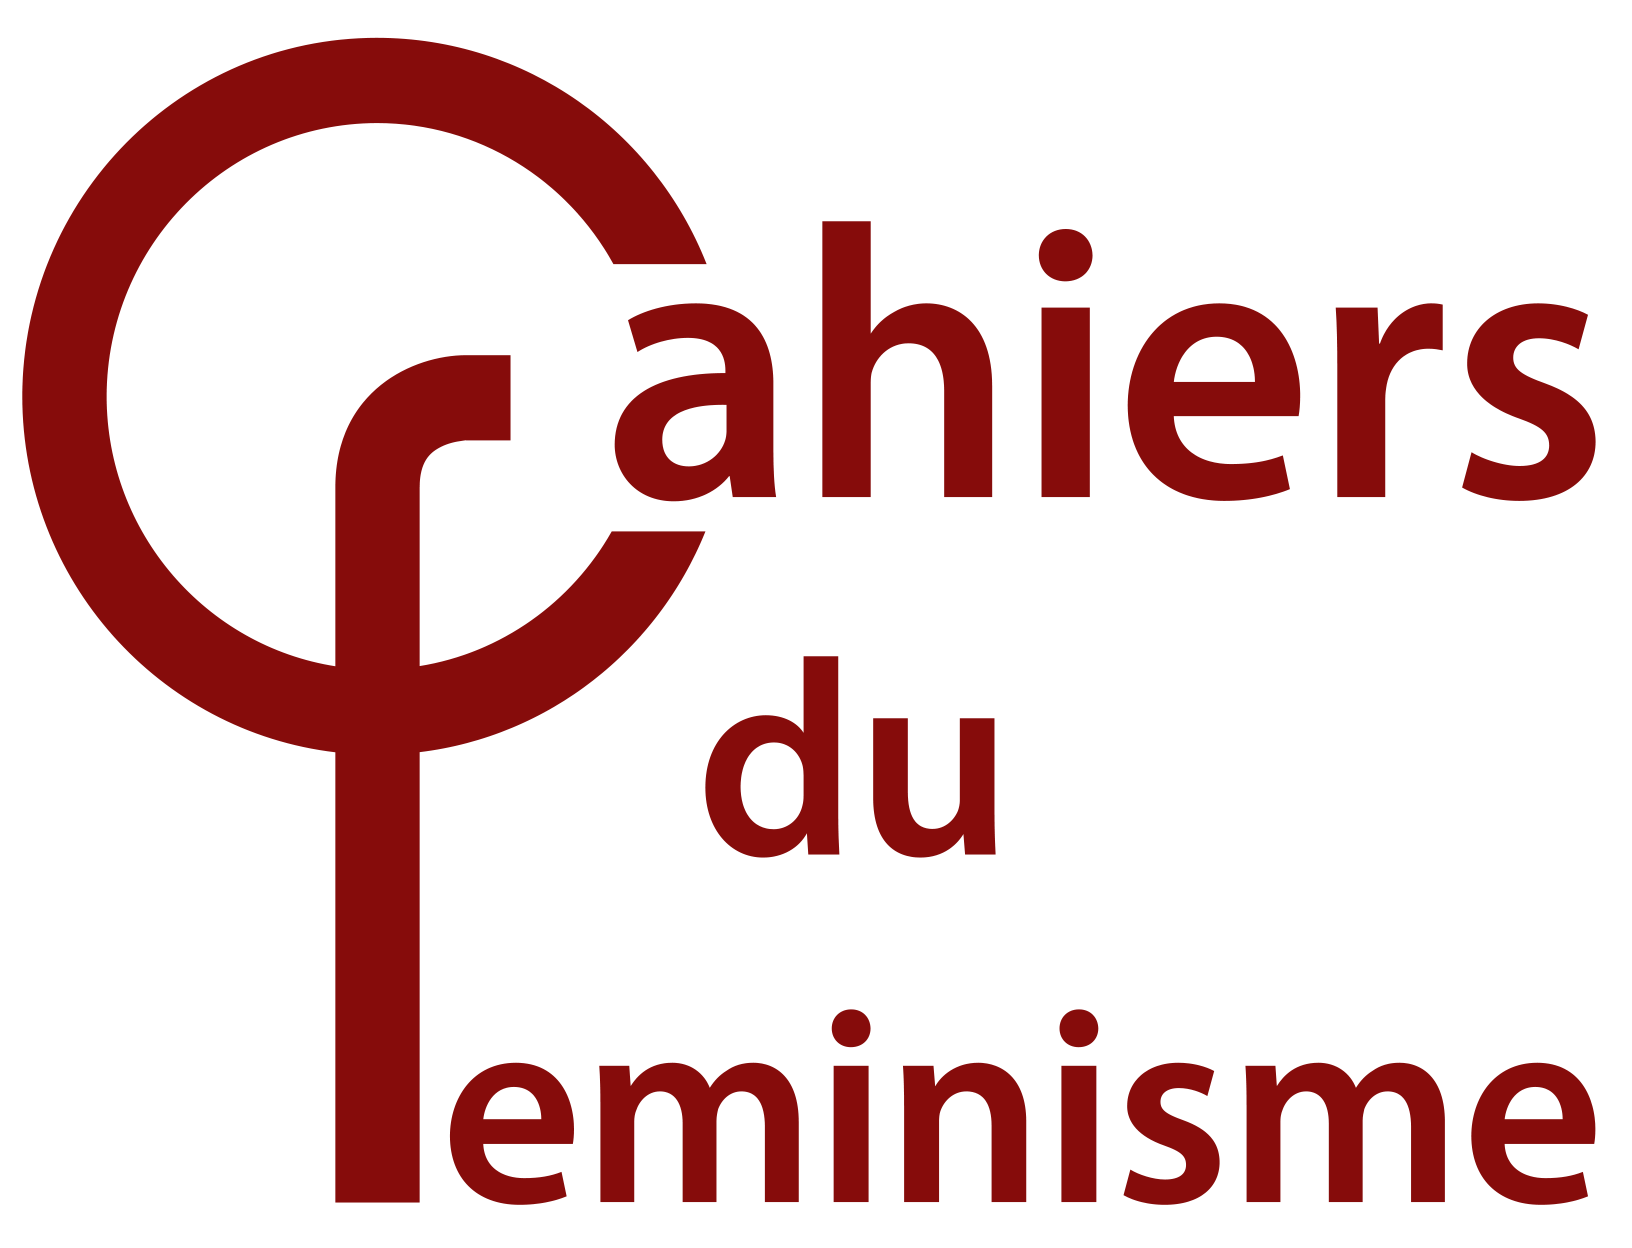 Cahiers du feminisme